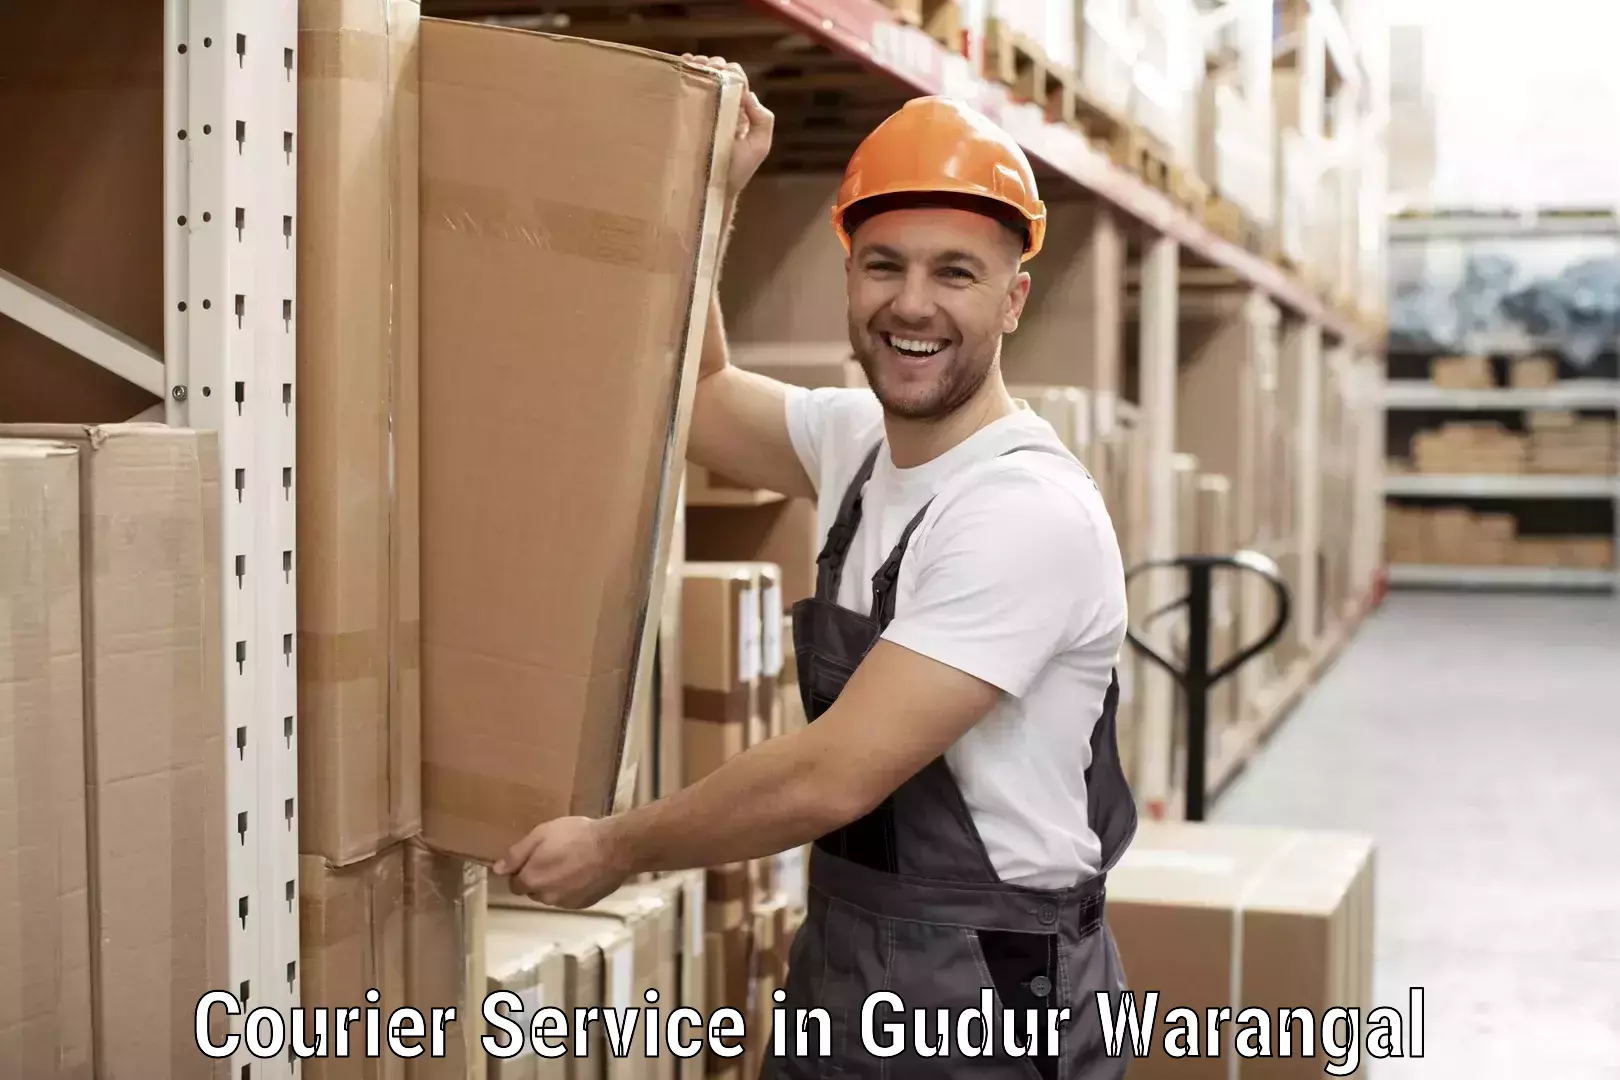 Customer-friendly courier services in Gudur Warangal